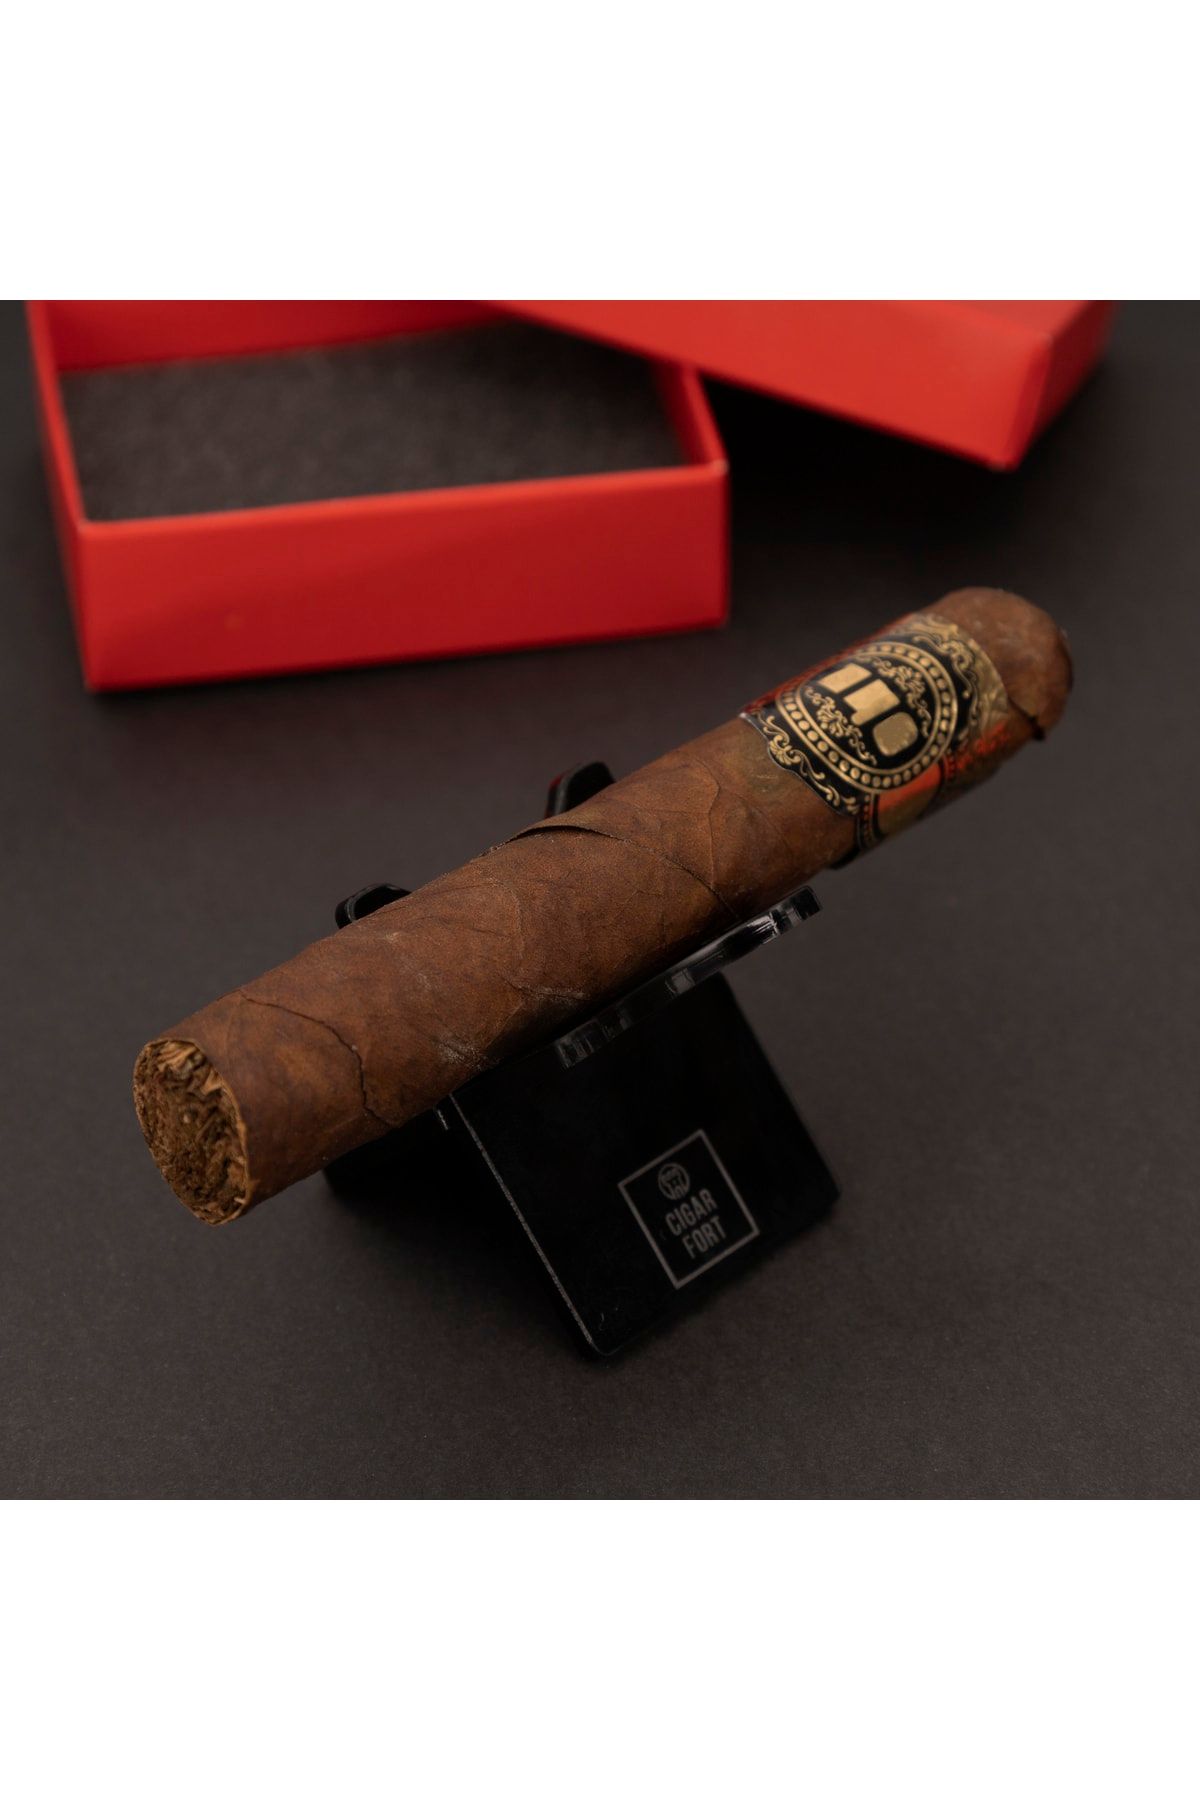 CigarFort Katlanır Puro Standı Sehpası - Kırmızı Deri Kılıflı